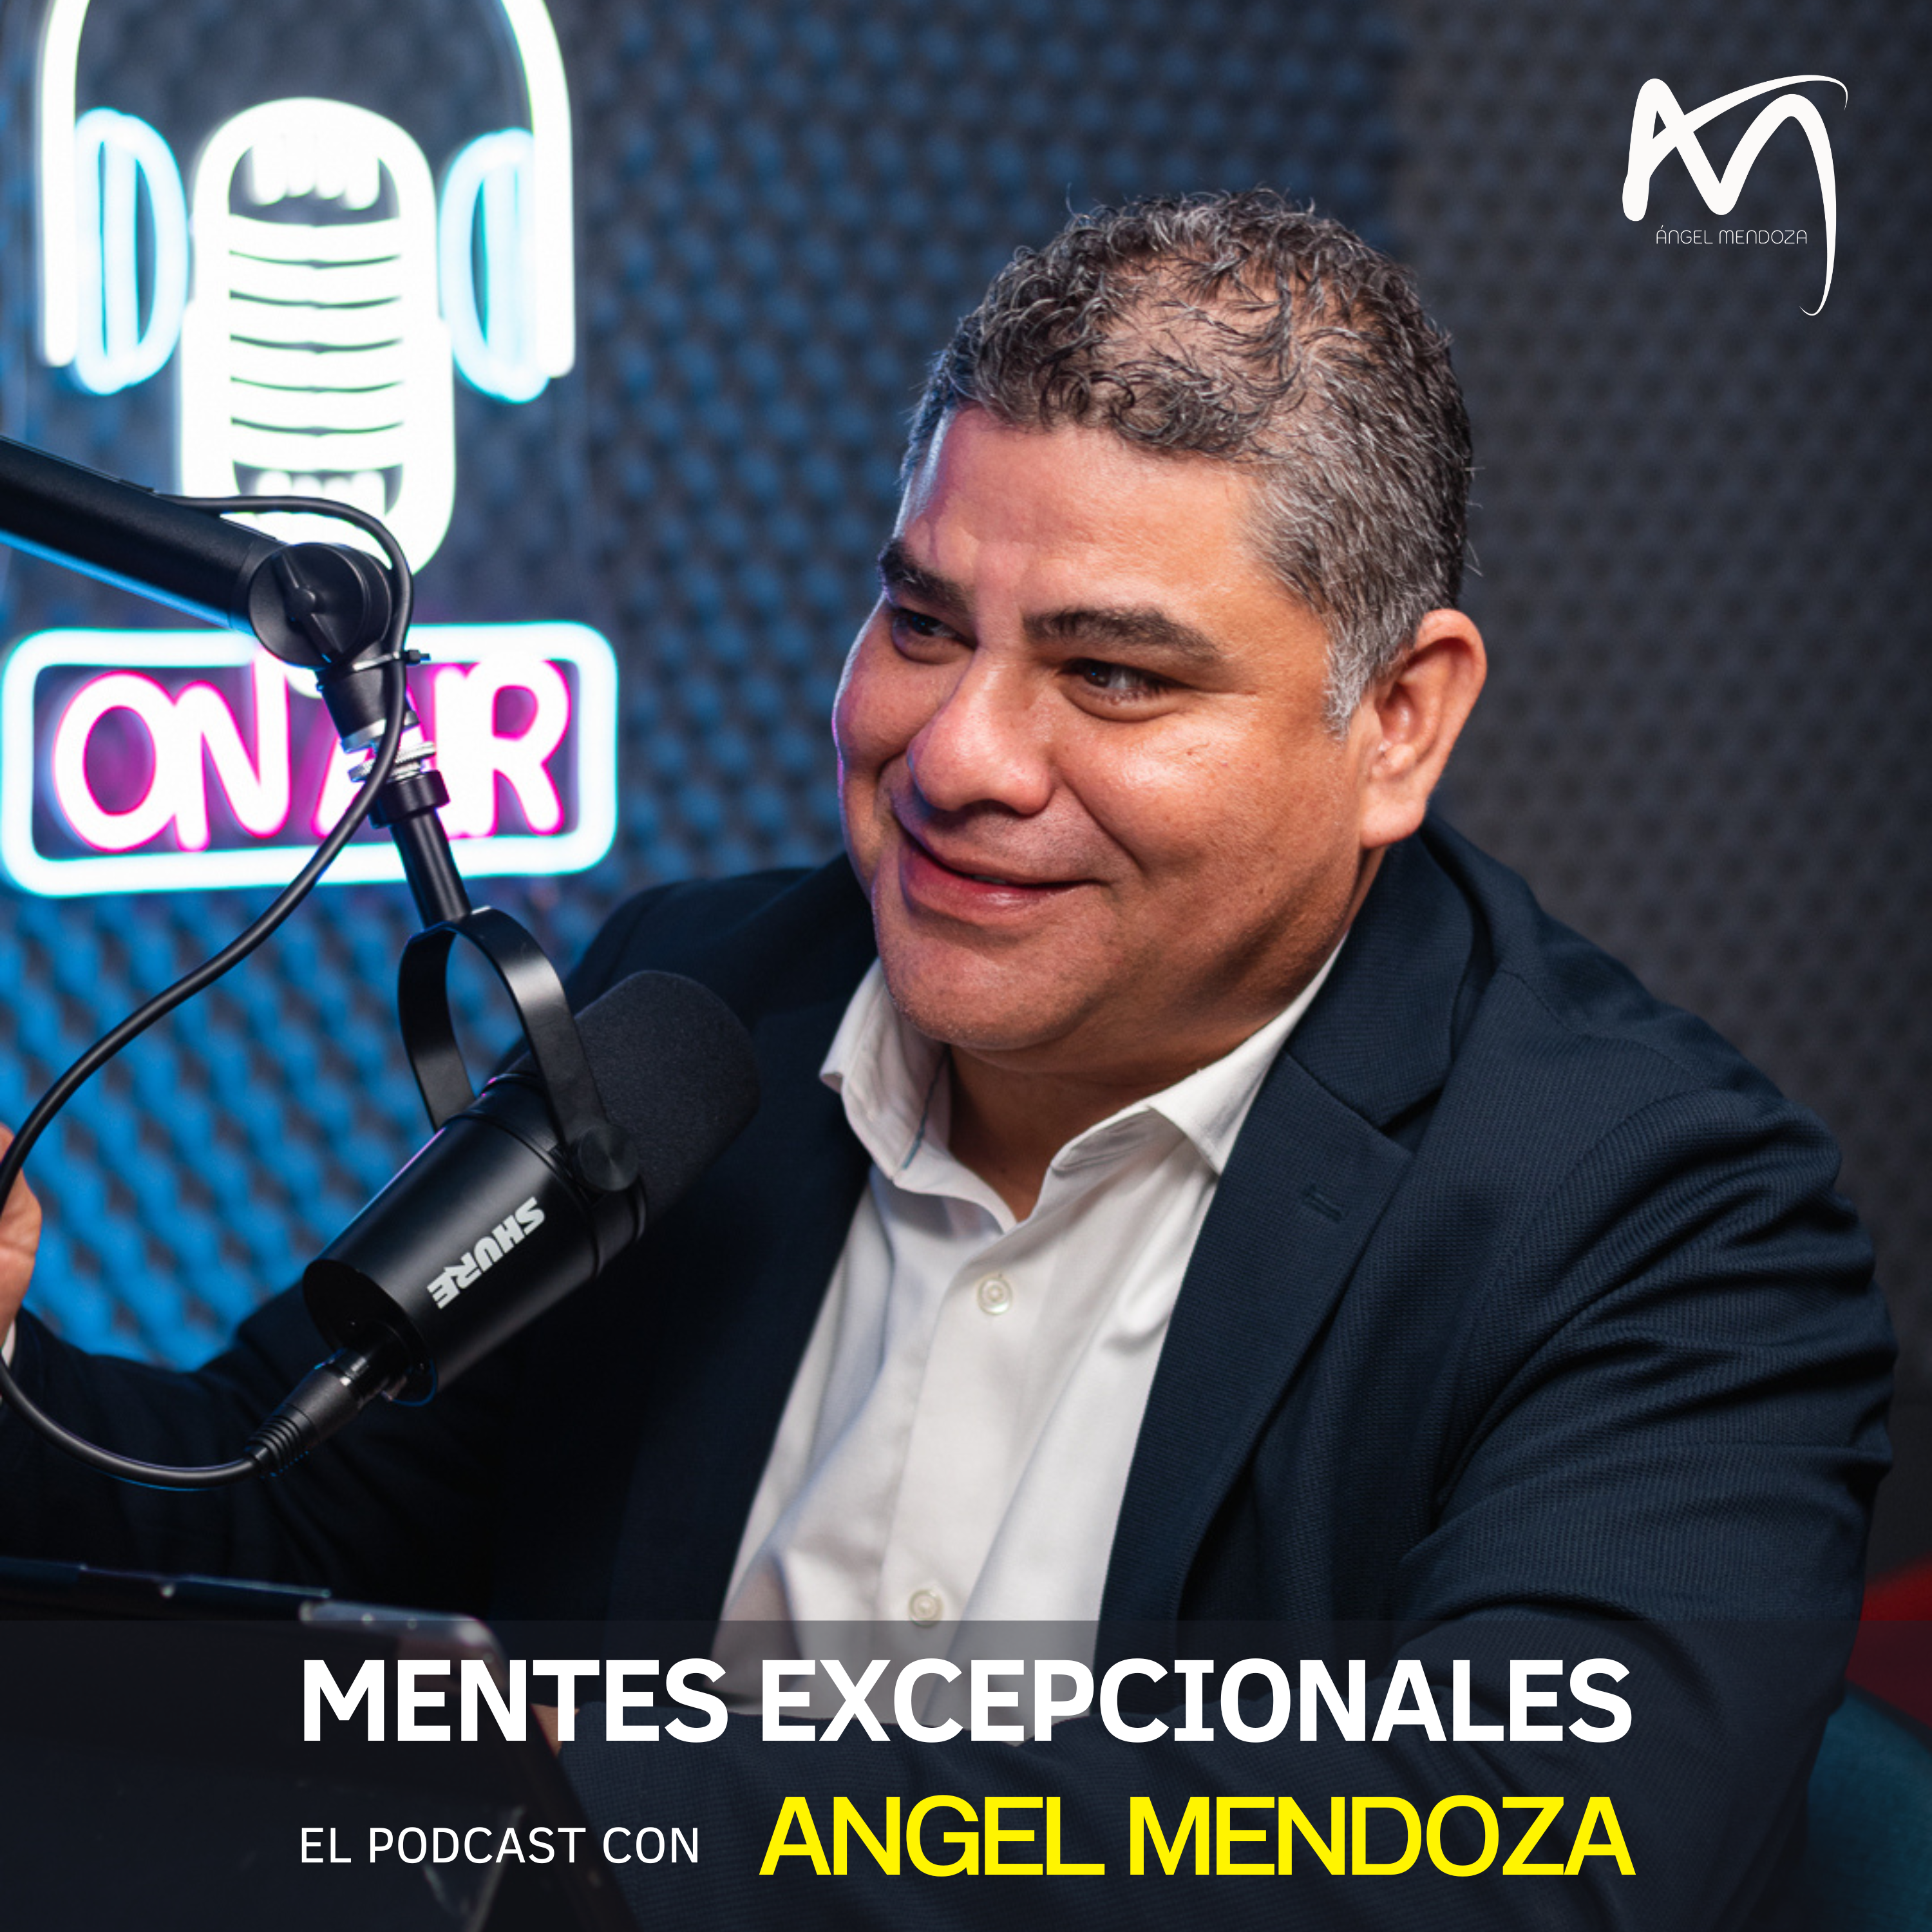 Aprende a conectar con tu sabiduría interna | Ana Vieyra en Mentes Excepcionales, el podcast con Ángel Mendoza